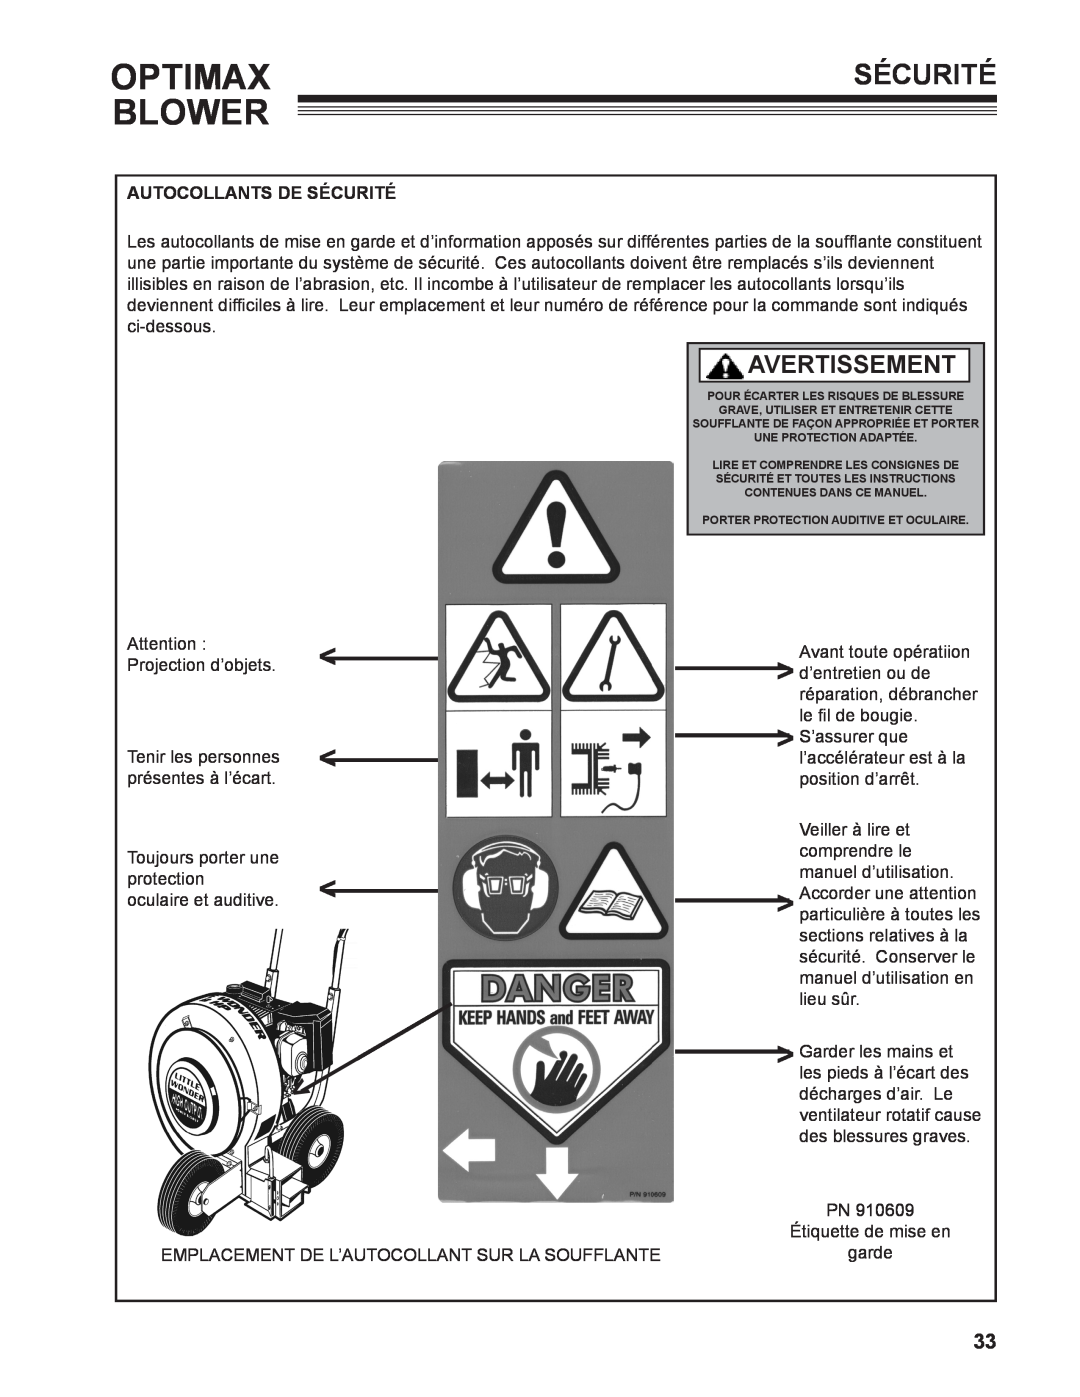 Little Wonder LB901-00-01 technical manual Optimax, Blower, Avertissement, Autocollants De Sécurité 